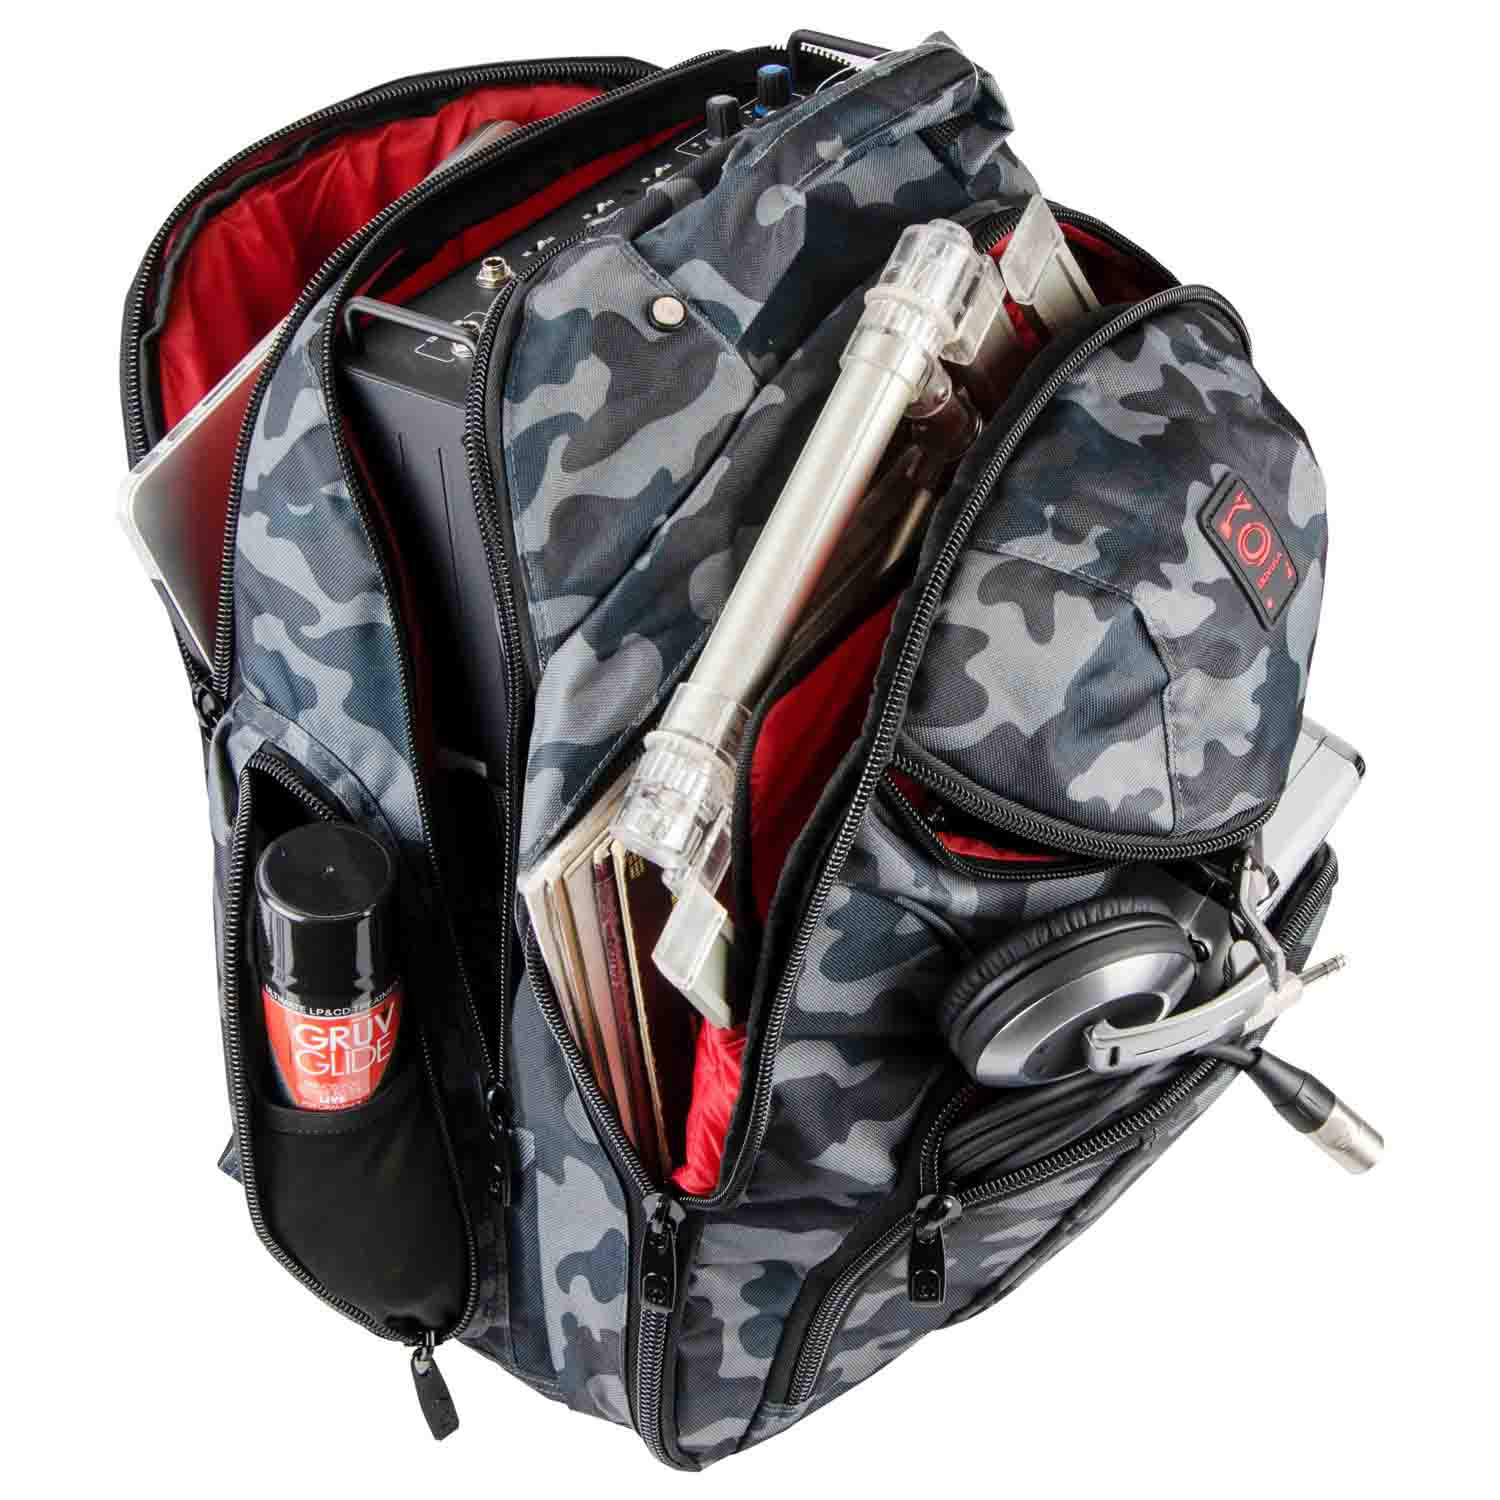 Odyssey BACKSPIN2GYC Gray Camouflage Digital Gear Backpack - Hollywood DJ